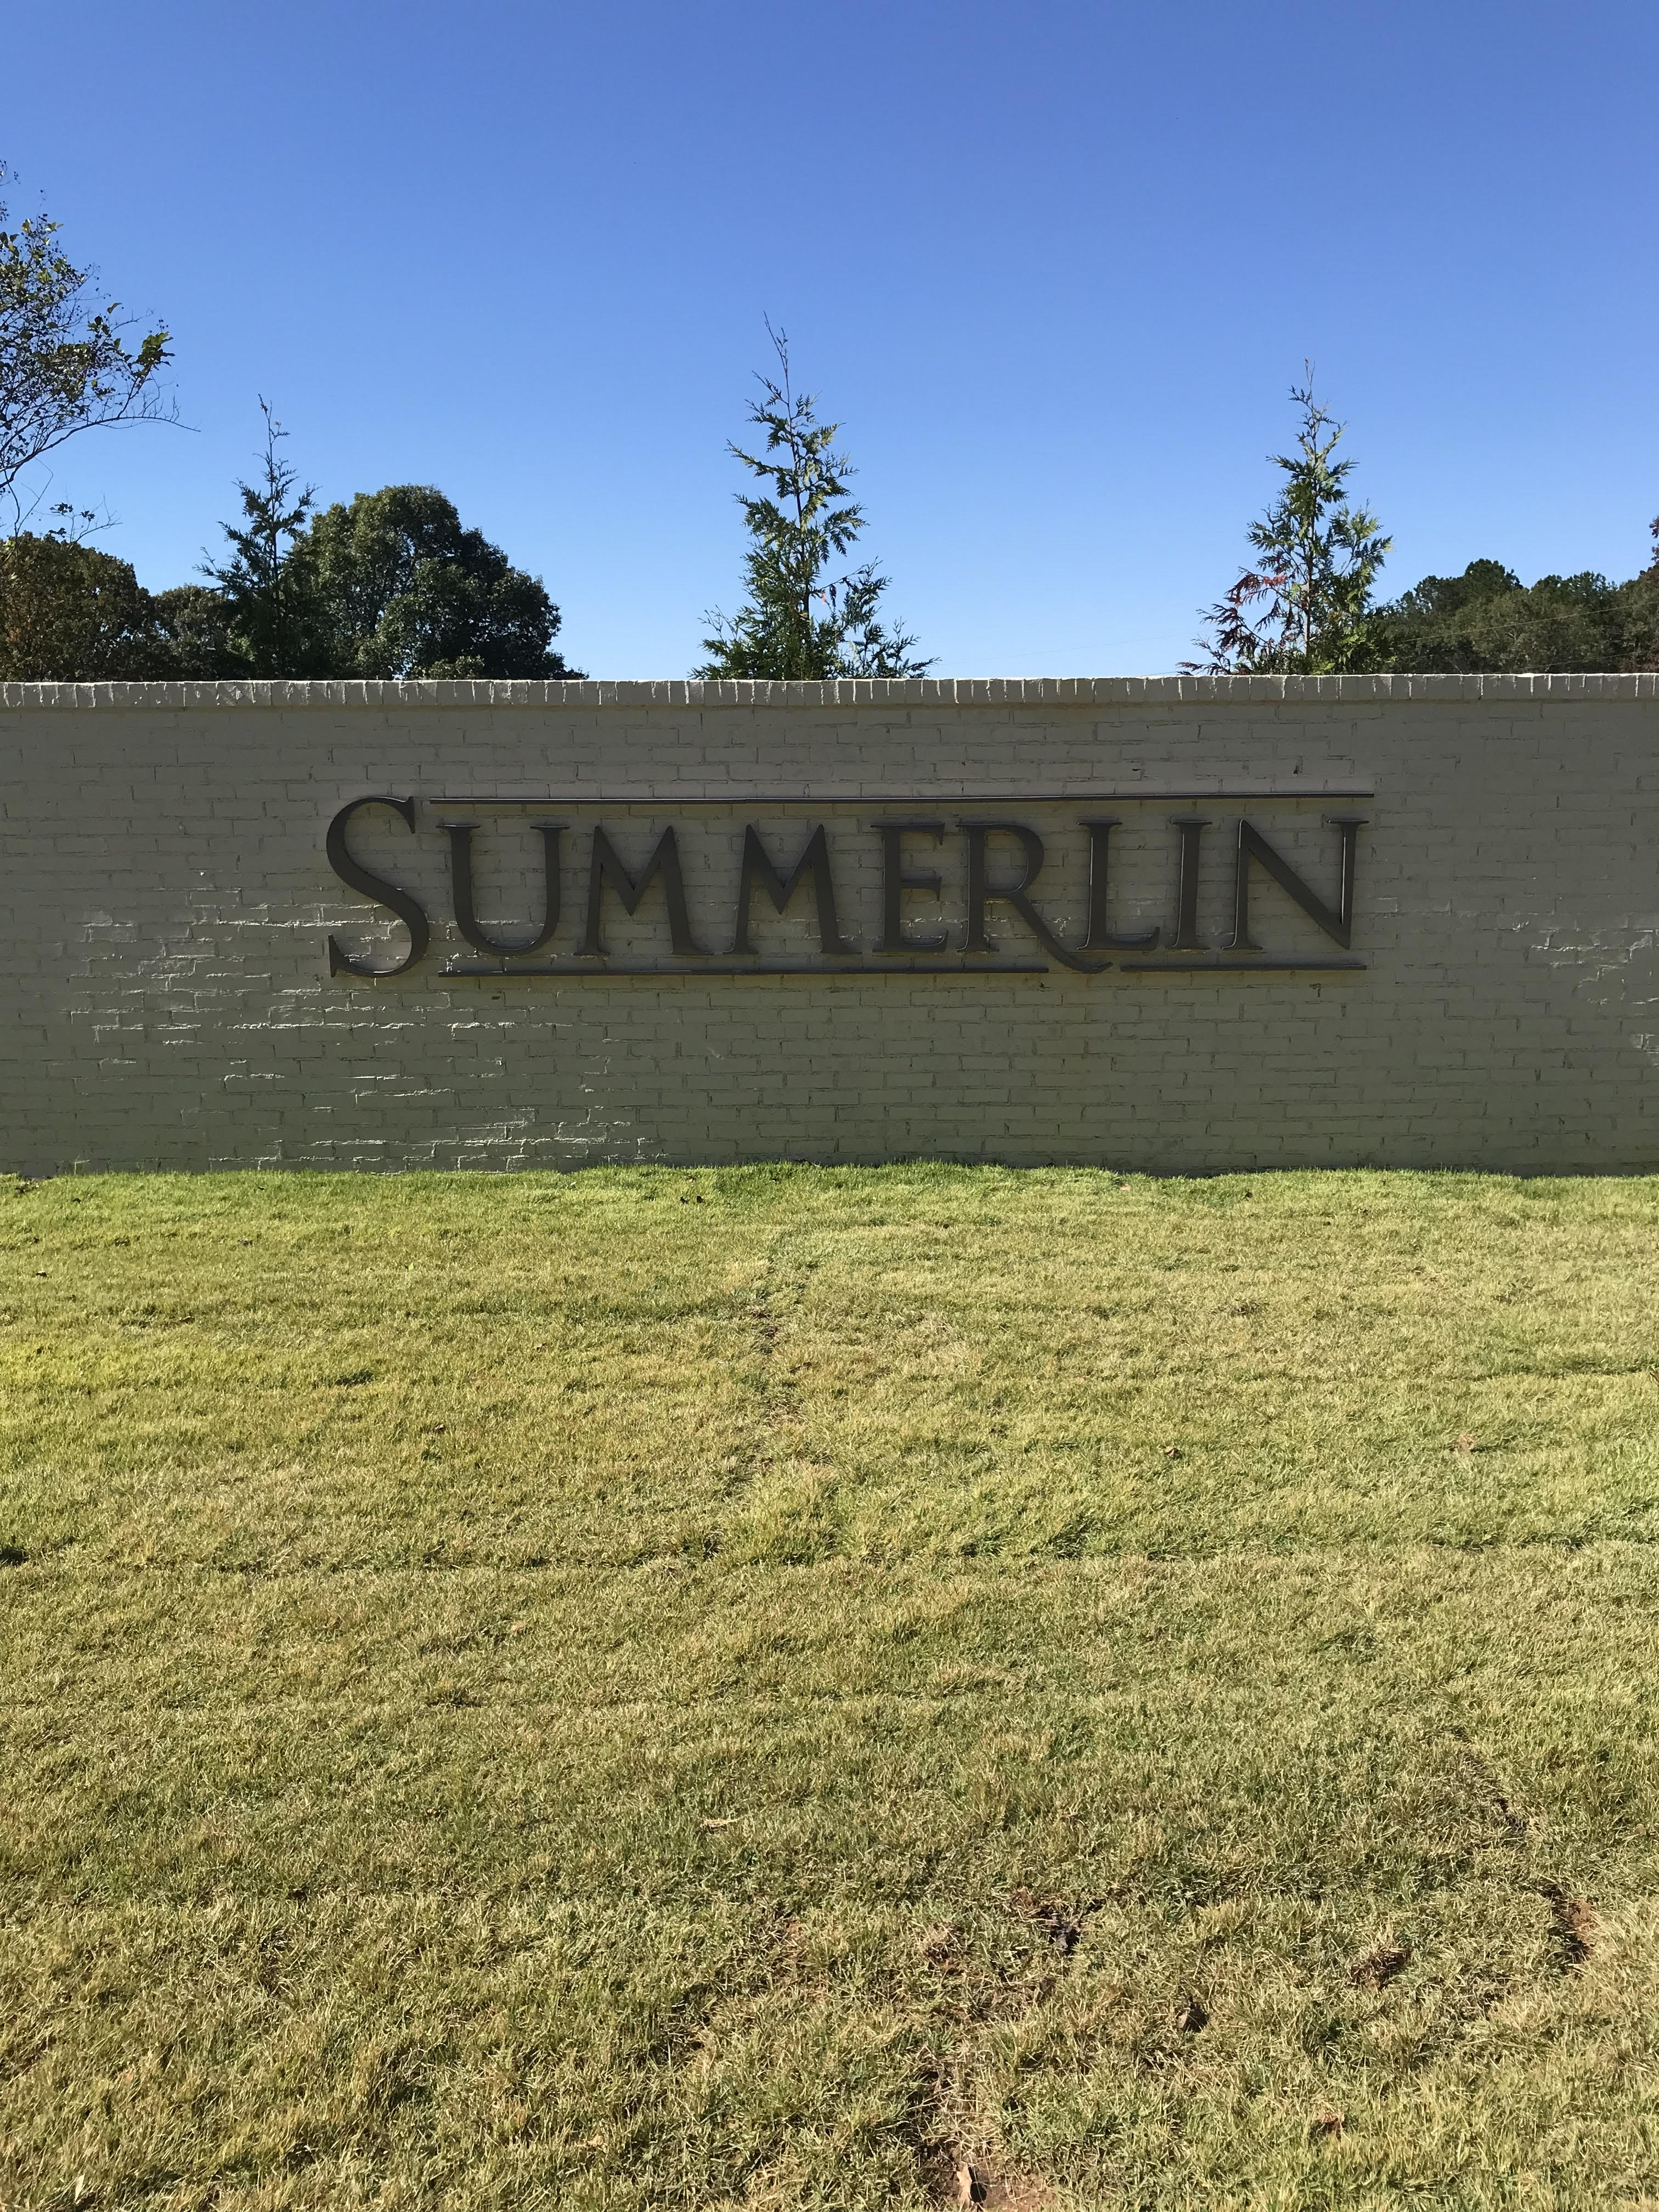 Summerlin Homes for Sale in Auburn AL